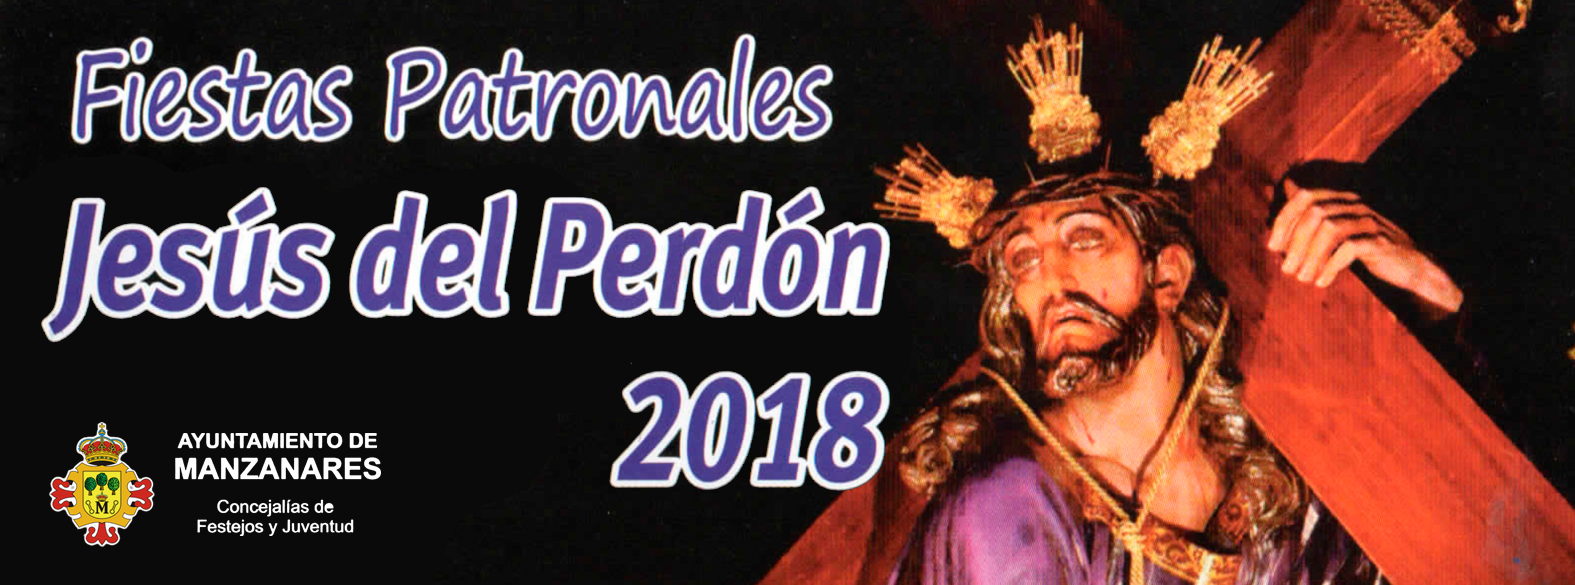 Fiestas patronales Jesus del Perdón en Manzanares 2018